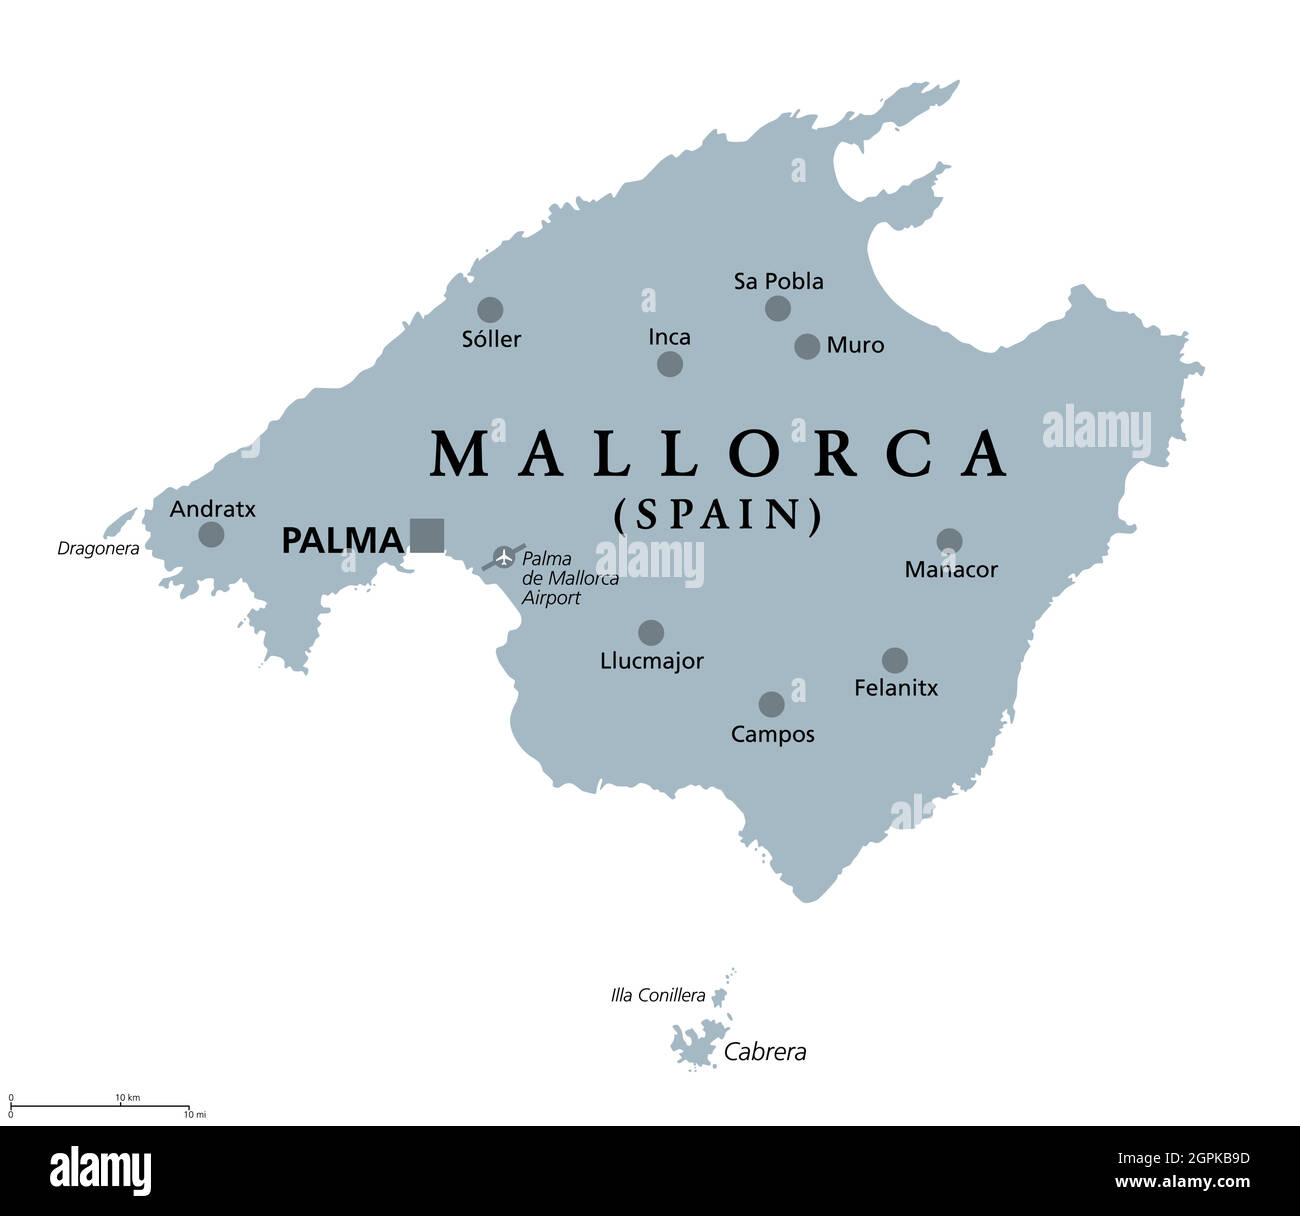 Mallorca, Majorca gray political map Stock Vector